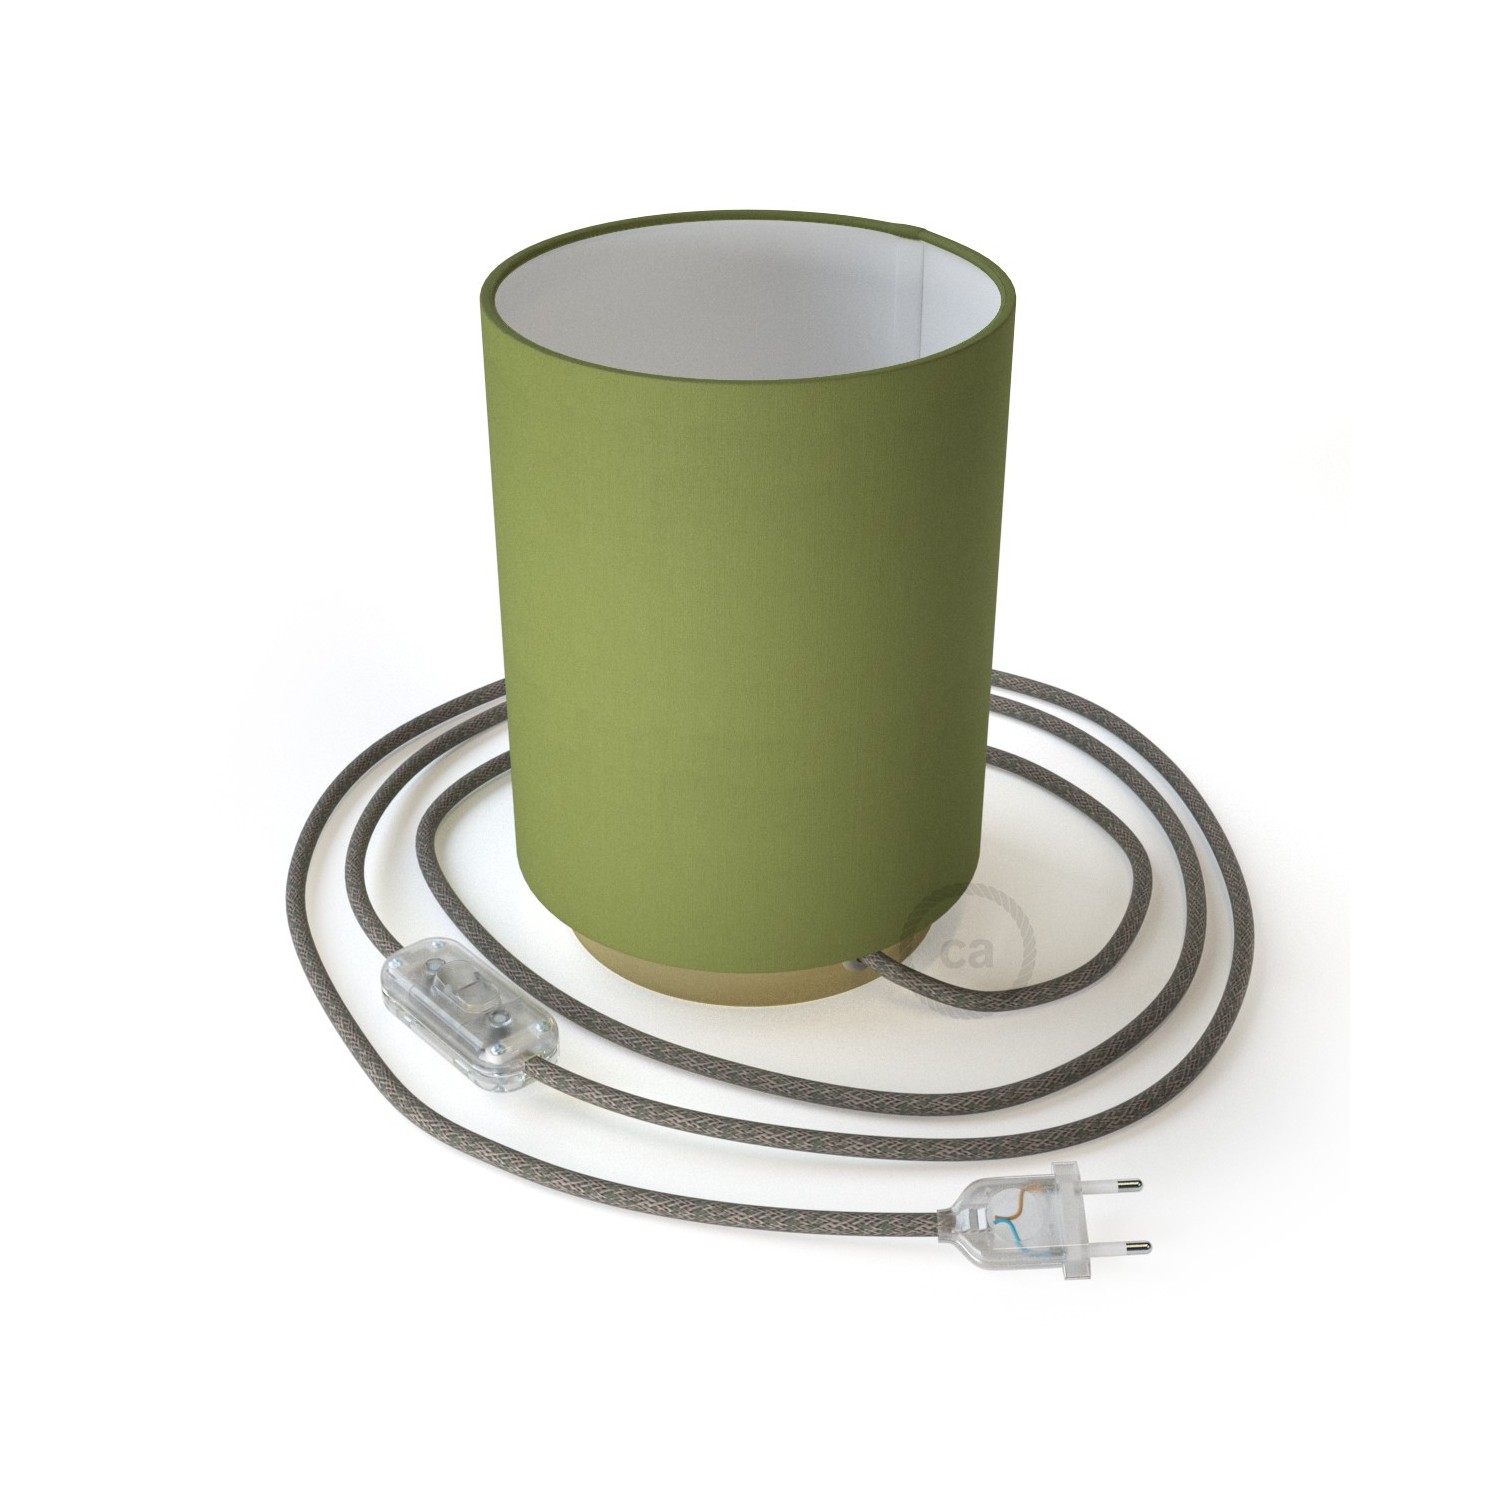 Posaluce Metal met Cilindro lampenkap van olijfgroen canvas, inclusief lichtbron, textielkabel, schakelaar en 2-polige stekker